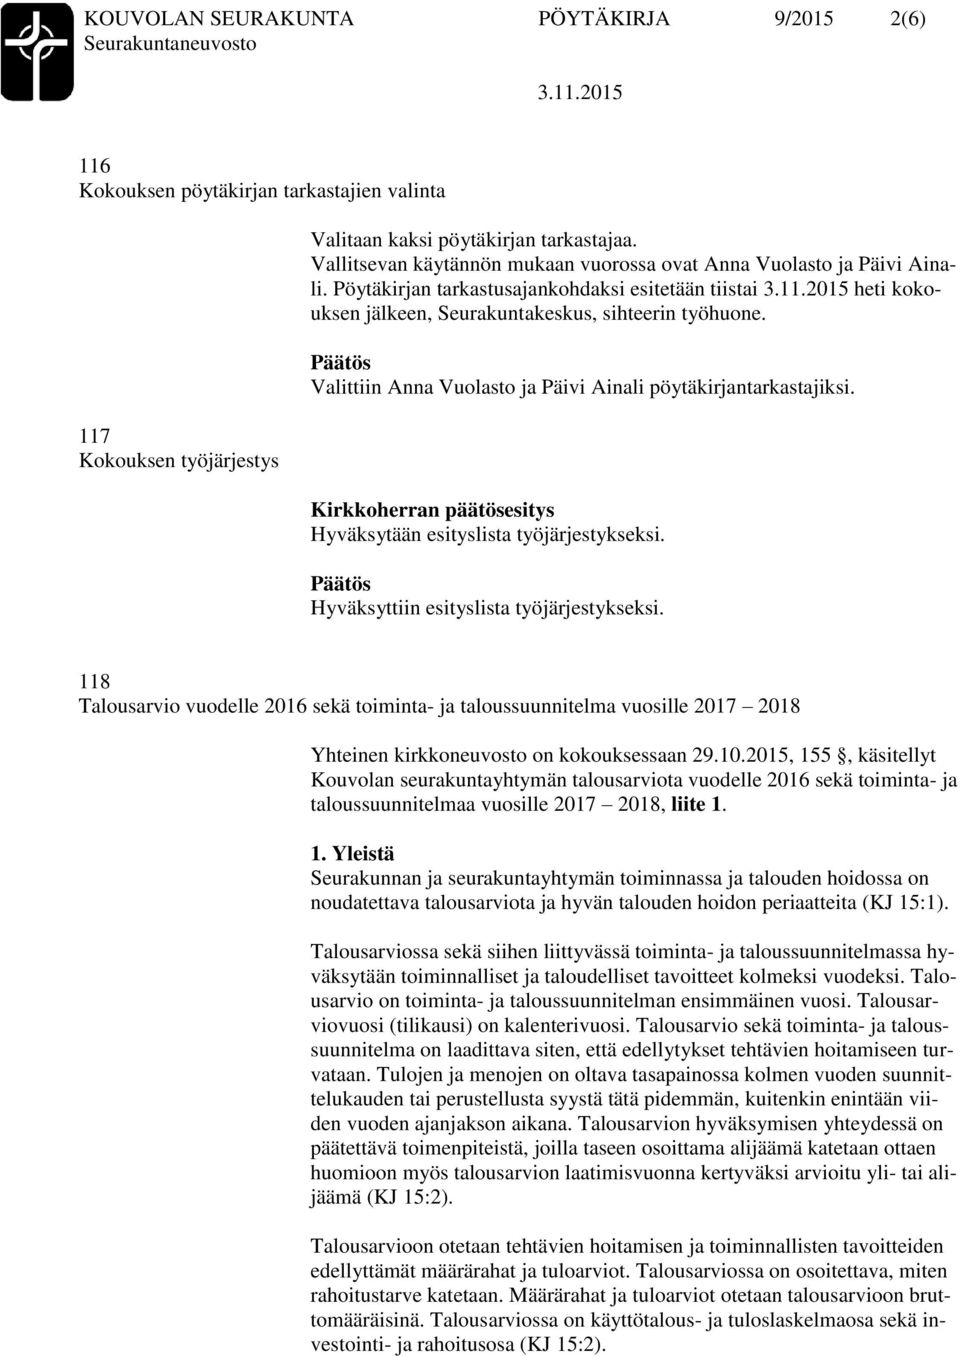 Valittiin Anna Vuolasto ja Päivi Ainali pöytäkirjantarkastajiksi. Hyväksytään esityslista työjärjestykseksi. Hyväksyttiin esityslista työjärjestykseksi.